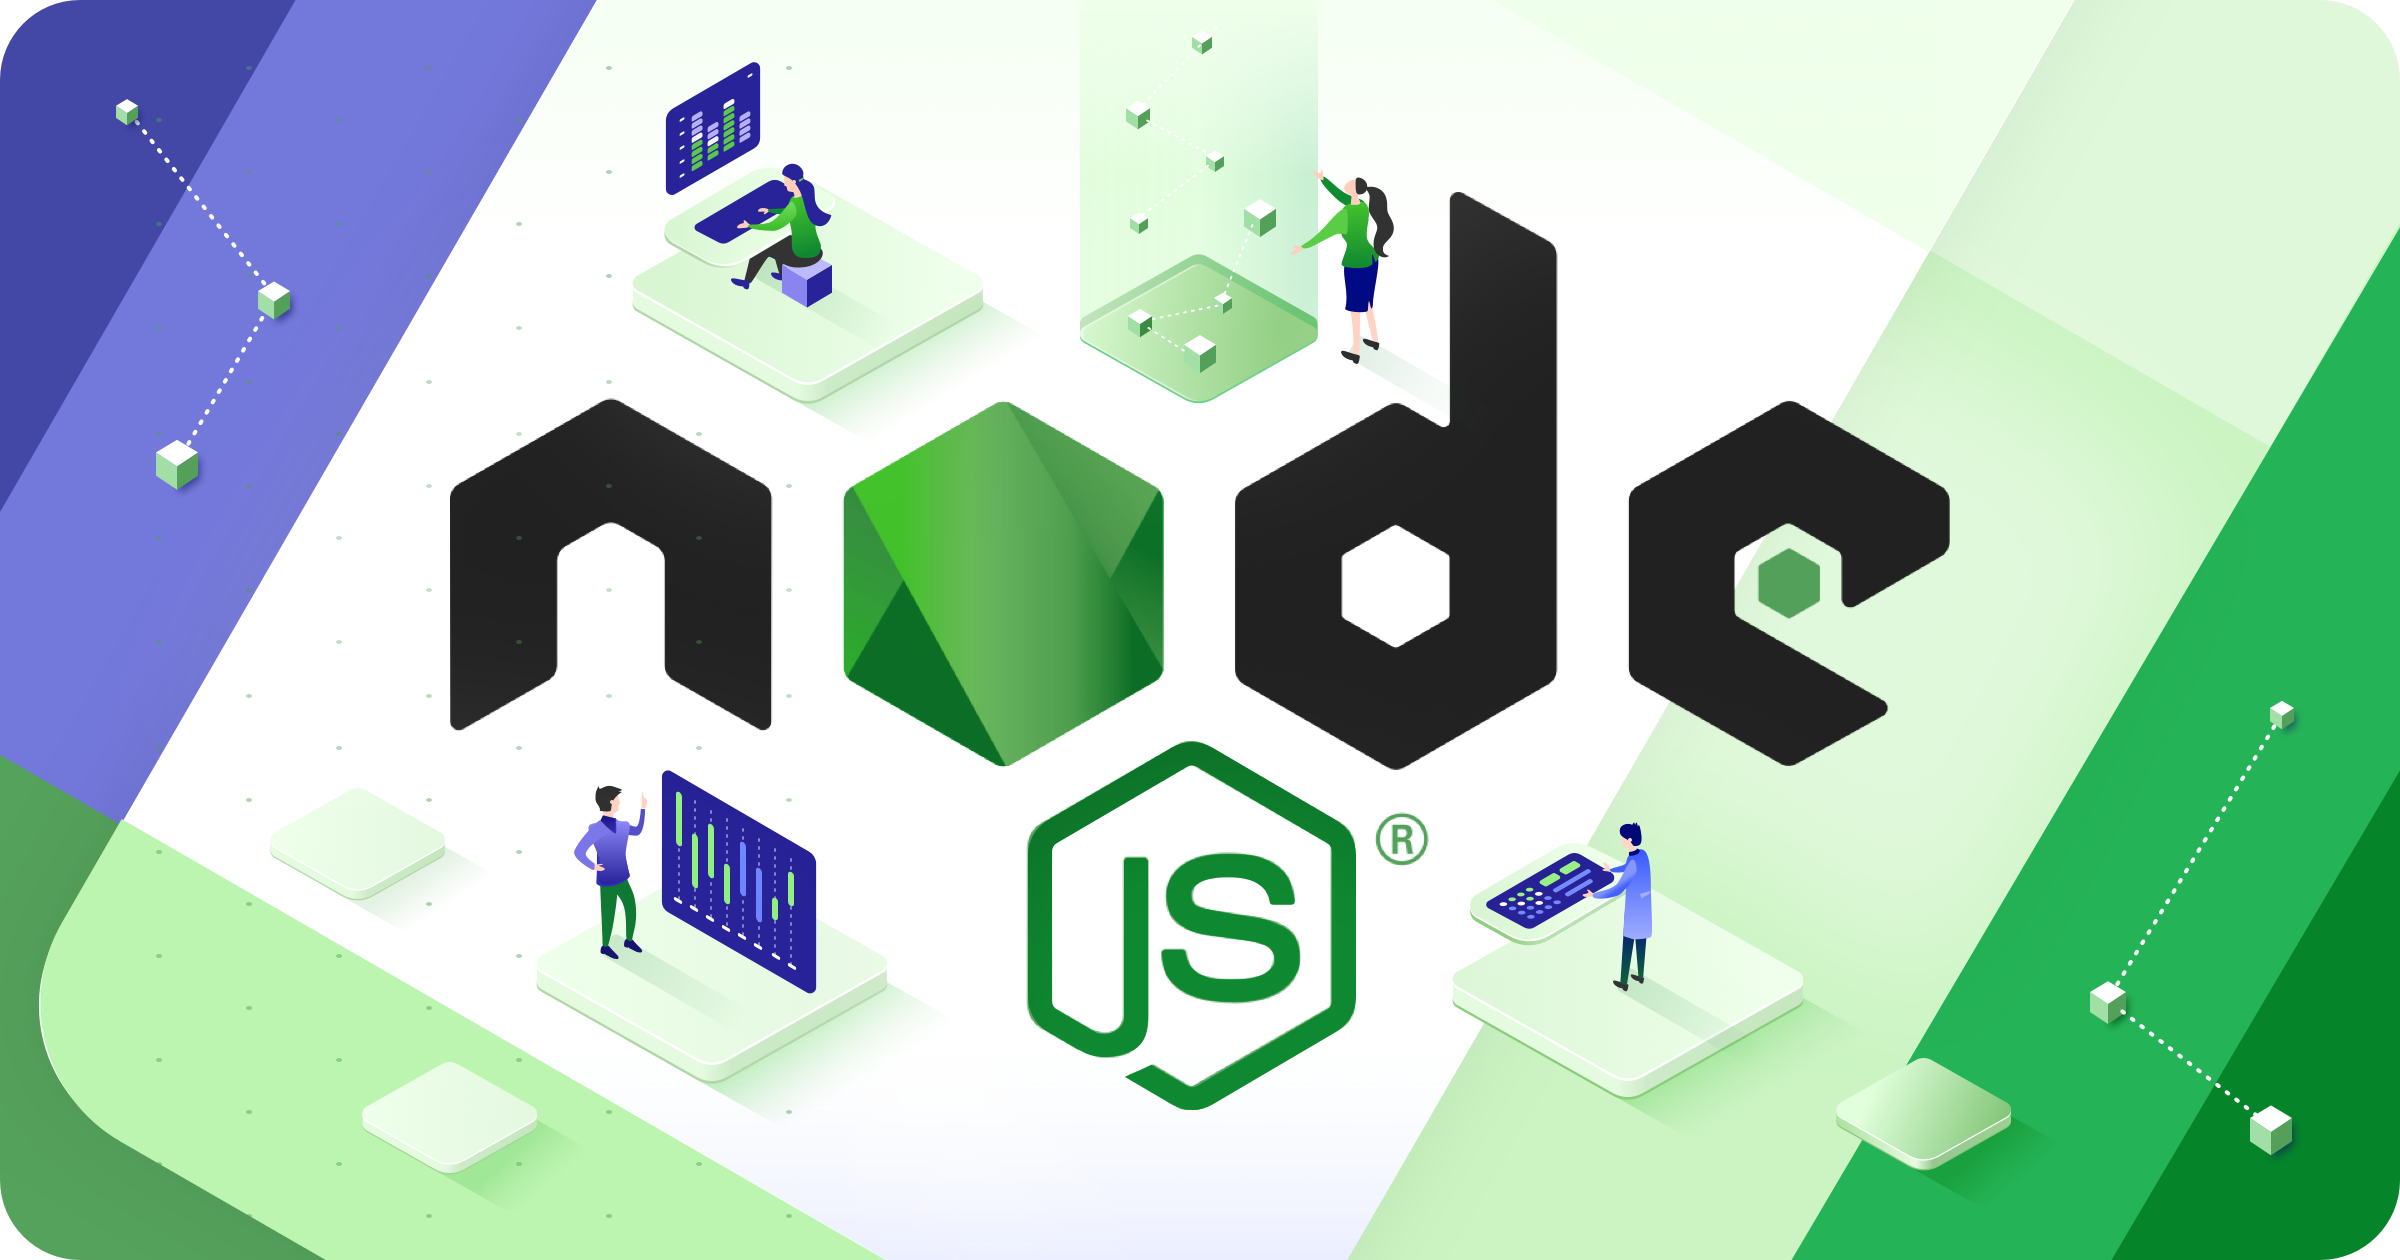 How to run node js app